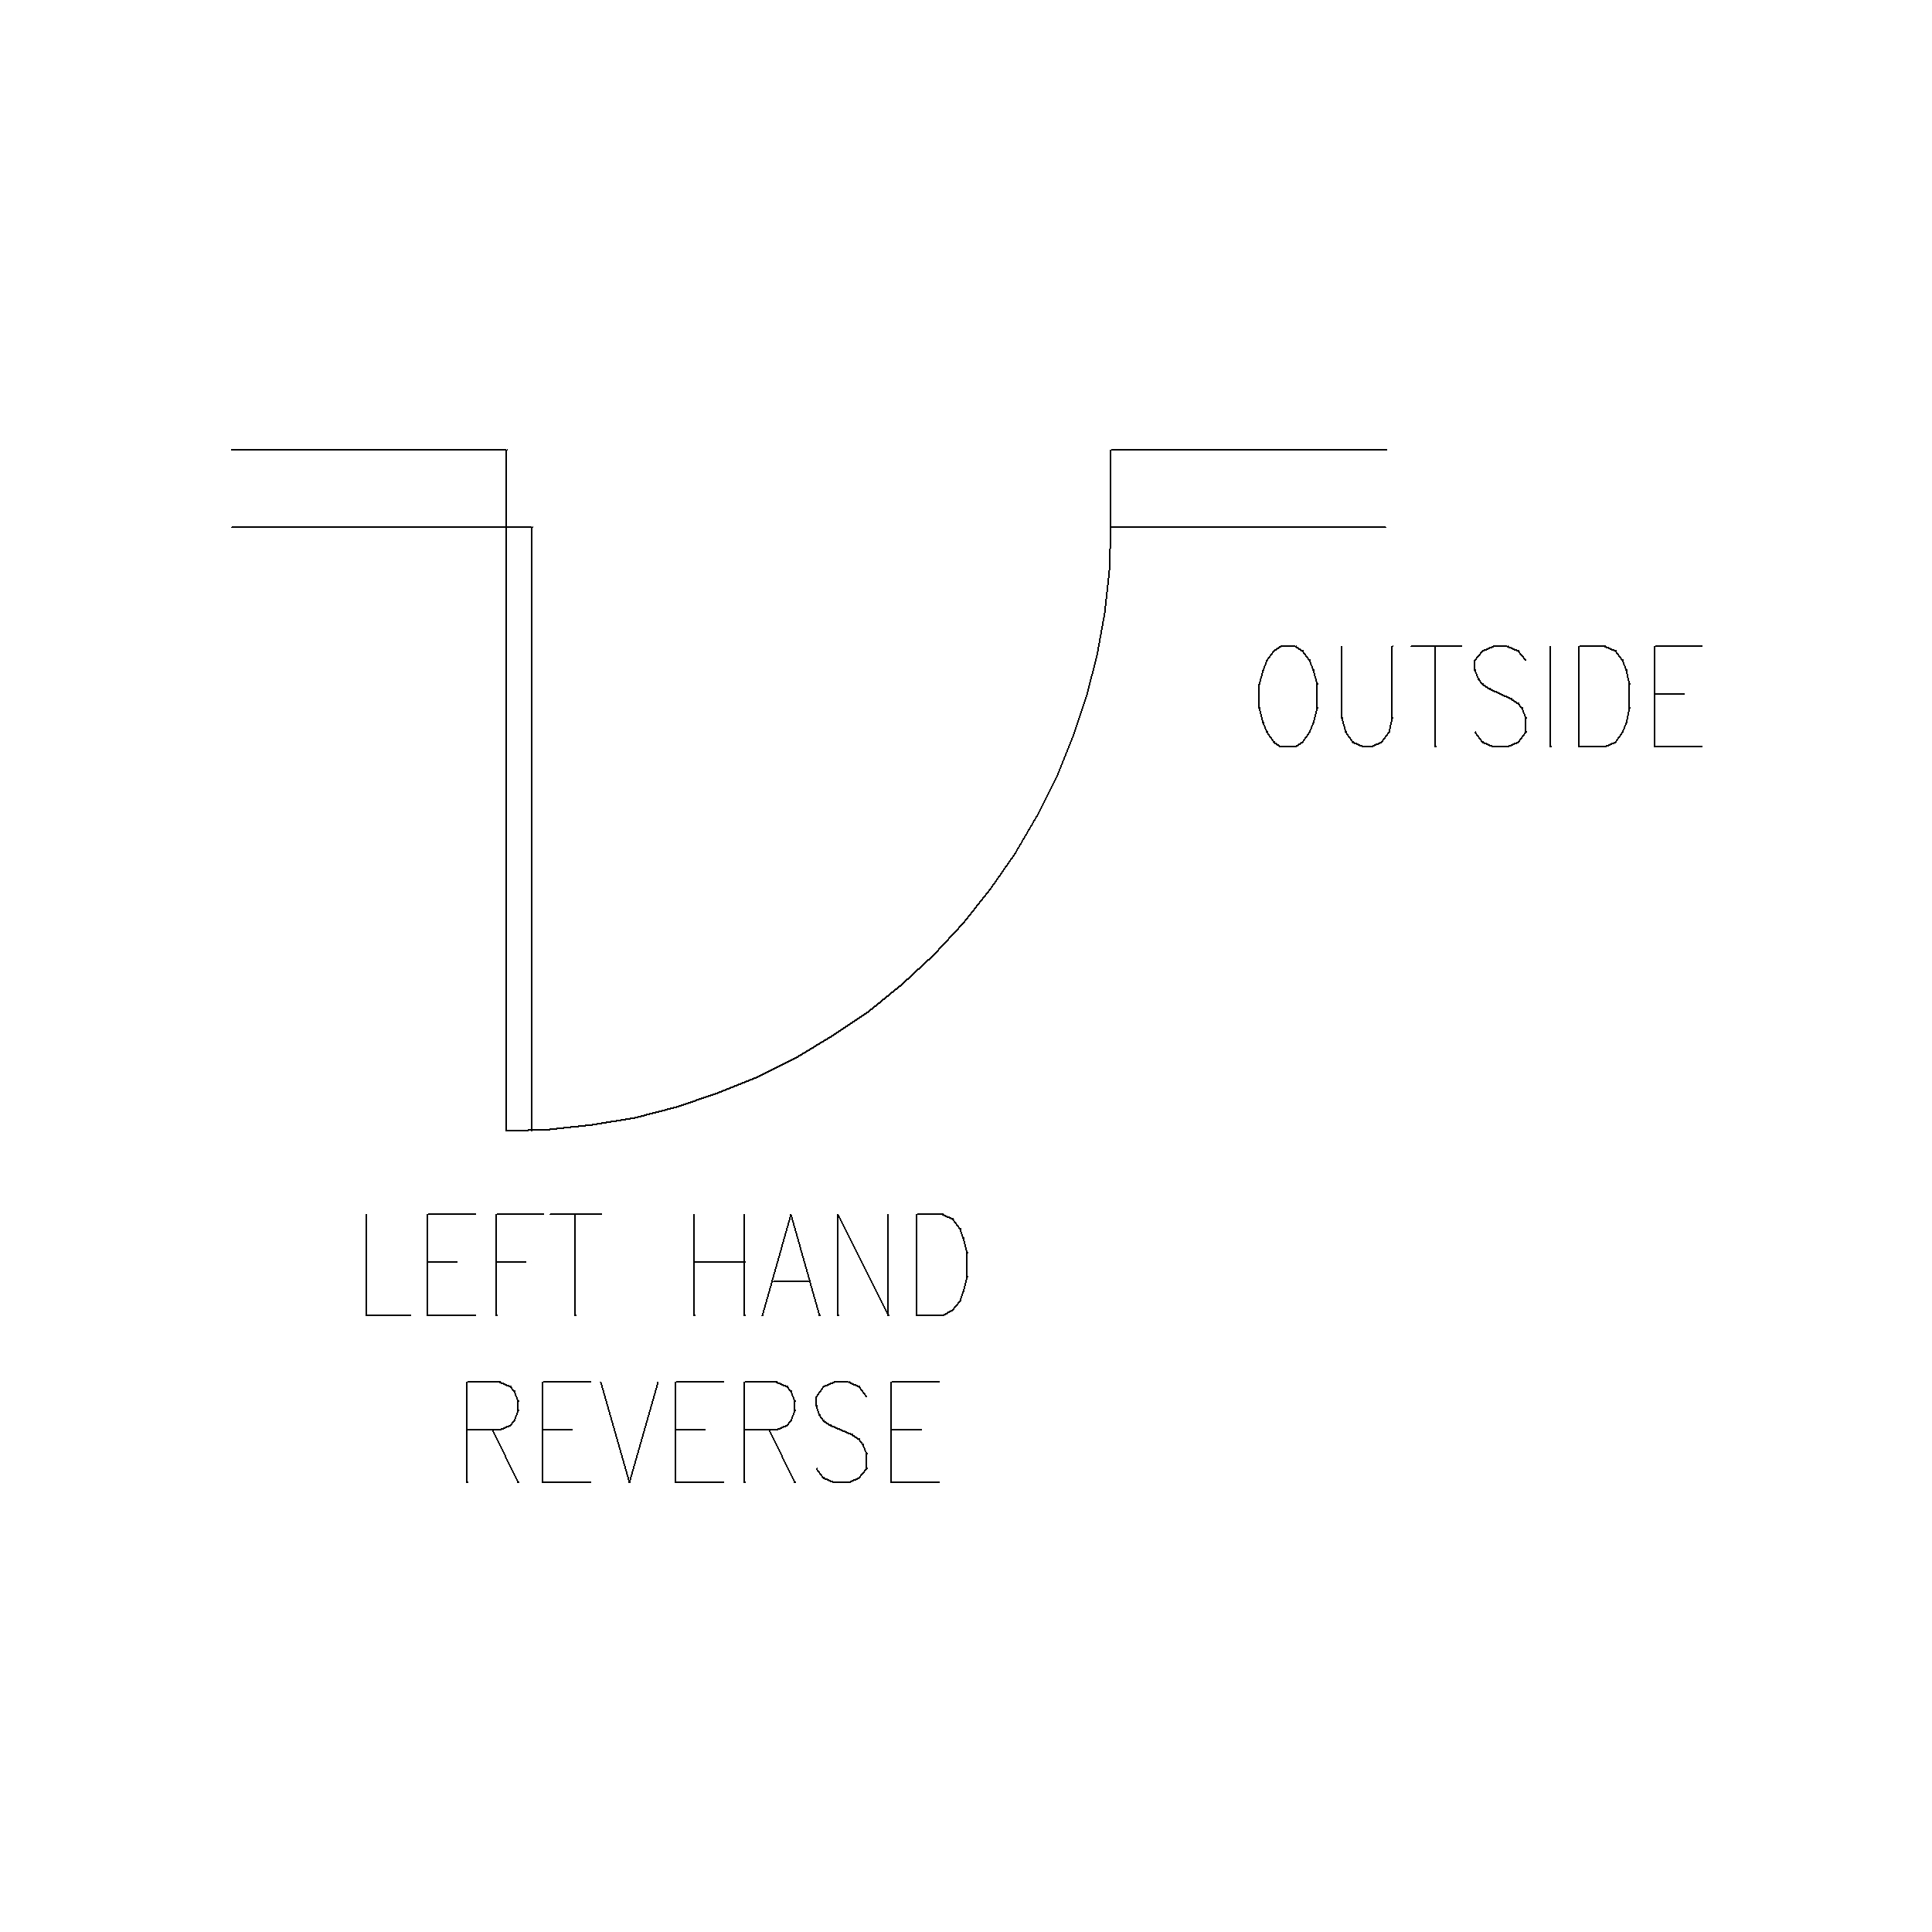 Left Hand Wide Reverse Door (787 mm): 2D Top View Plan - Cadblockdwg